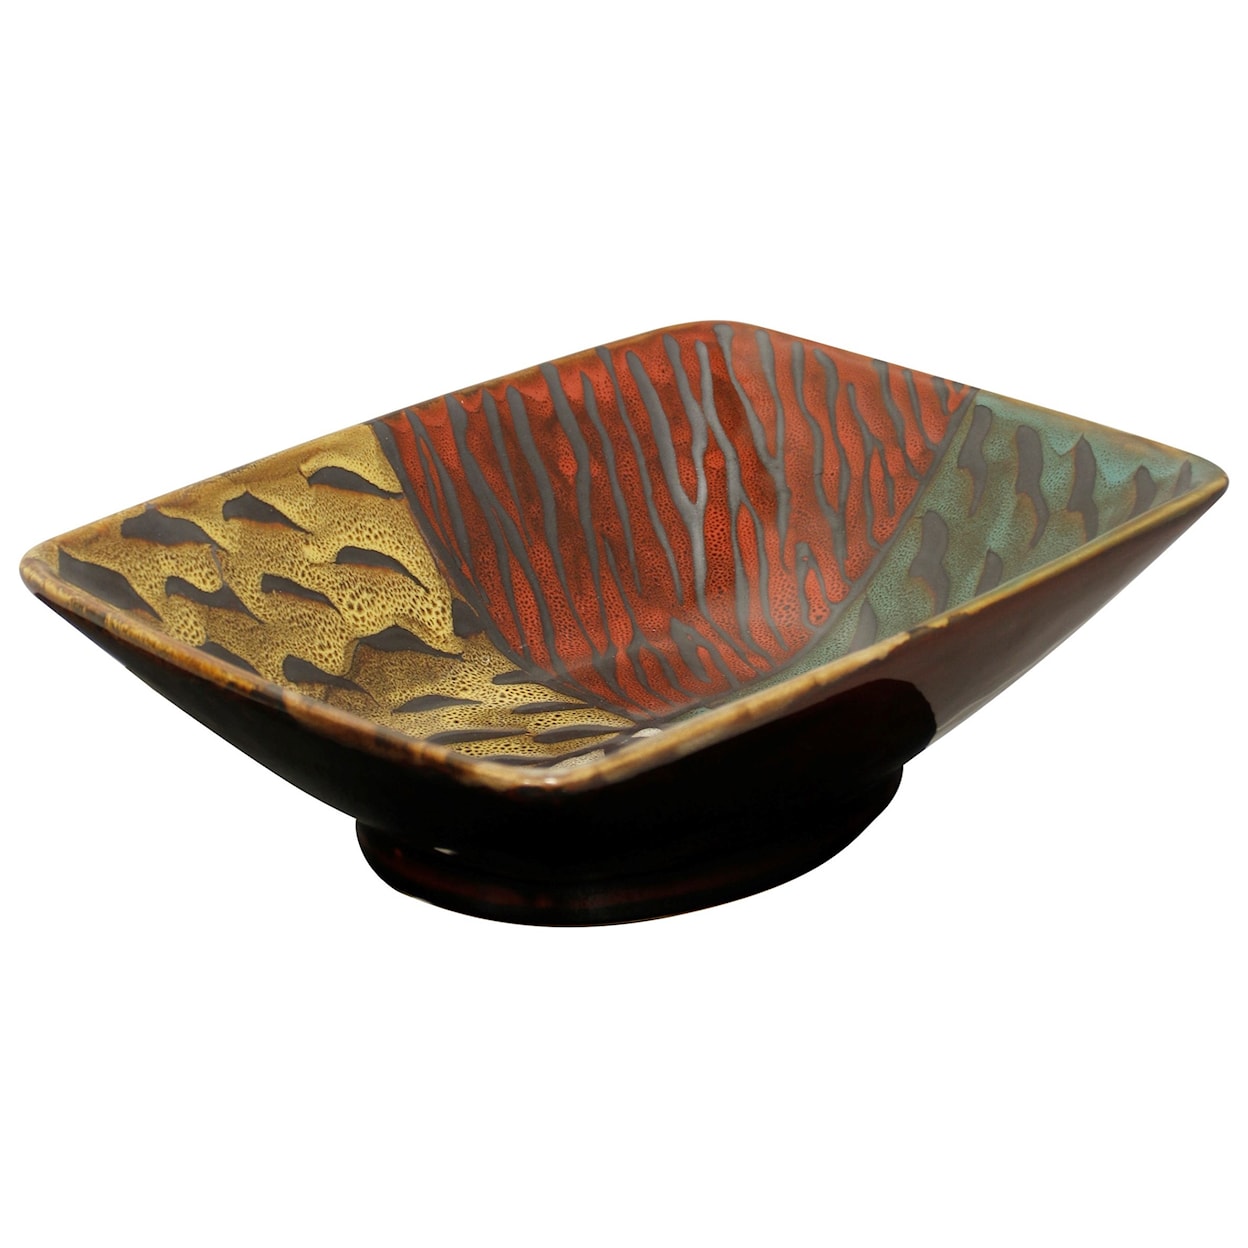 StyleCraft Accessories Rectangular Ceramic Bowl